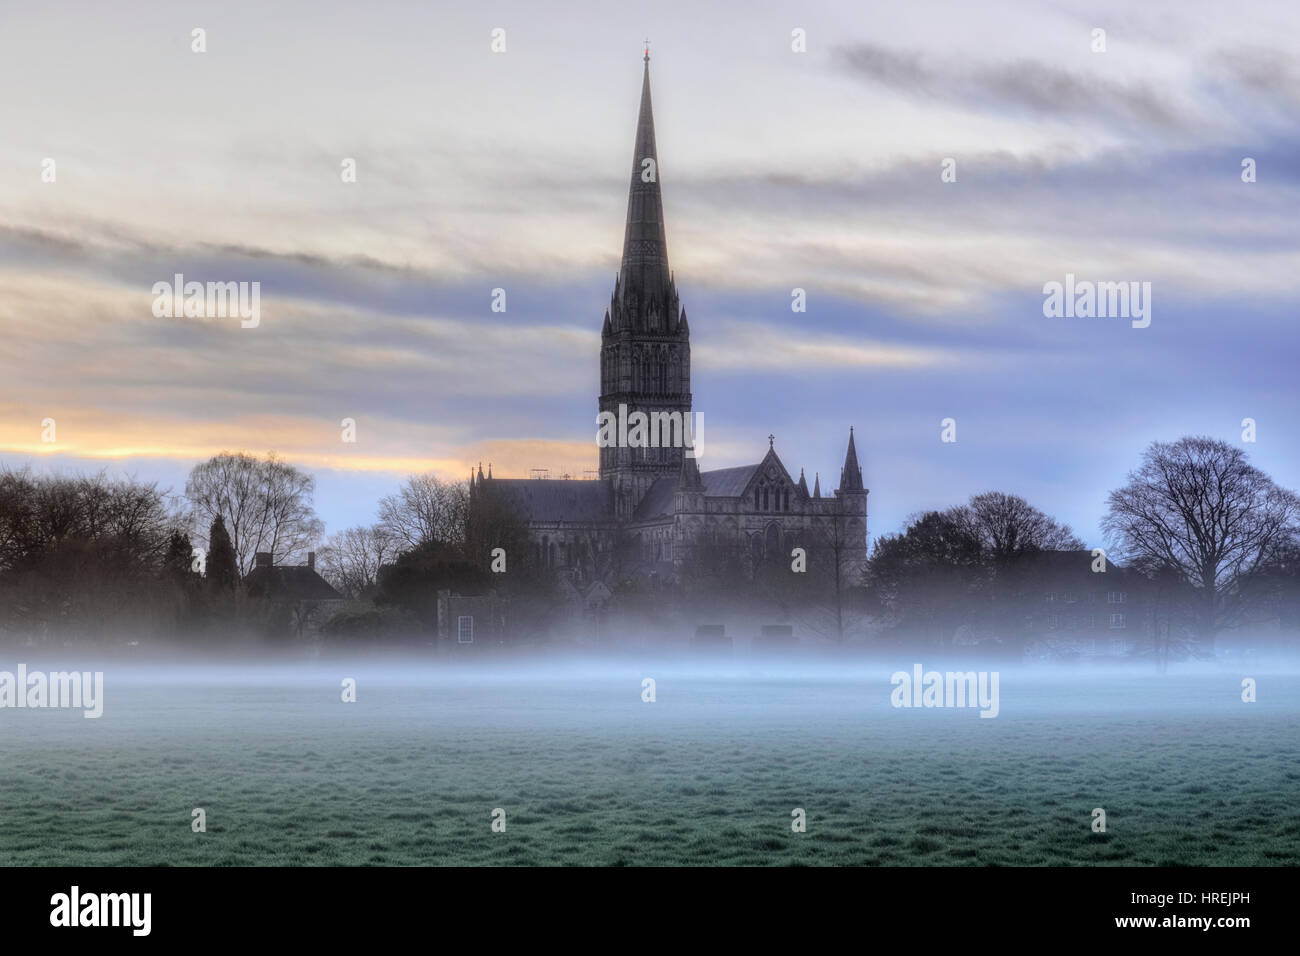 Salisbury Cathedral, Salisbury, Wiltshire, England, UK Stock Photo